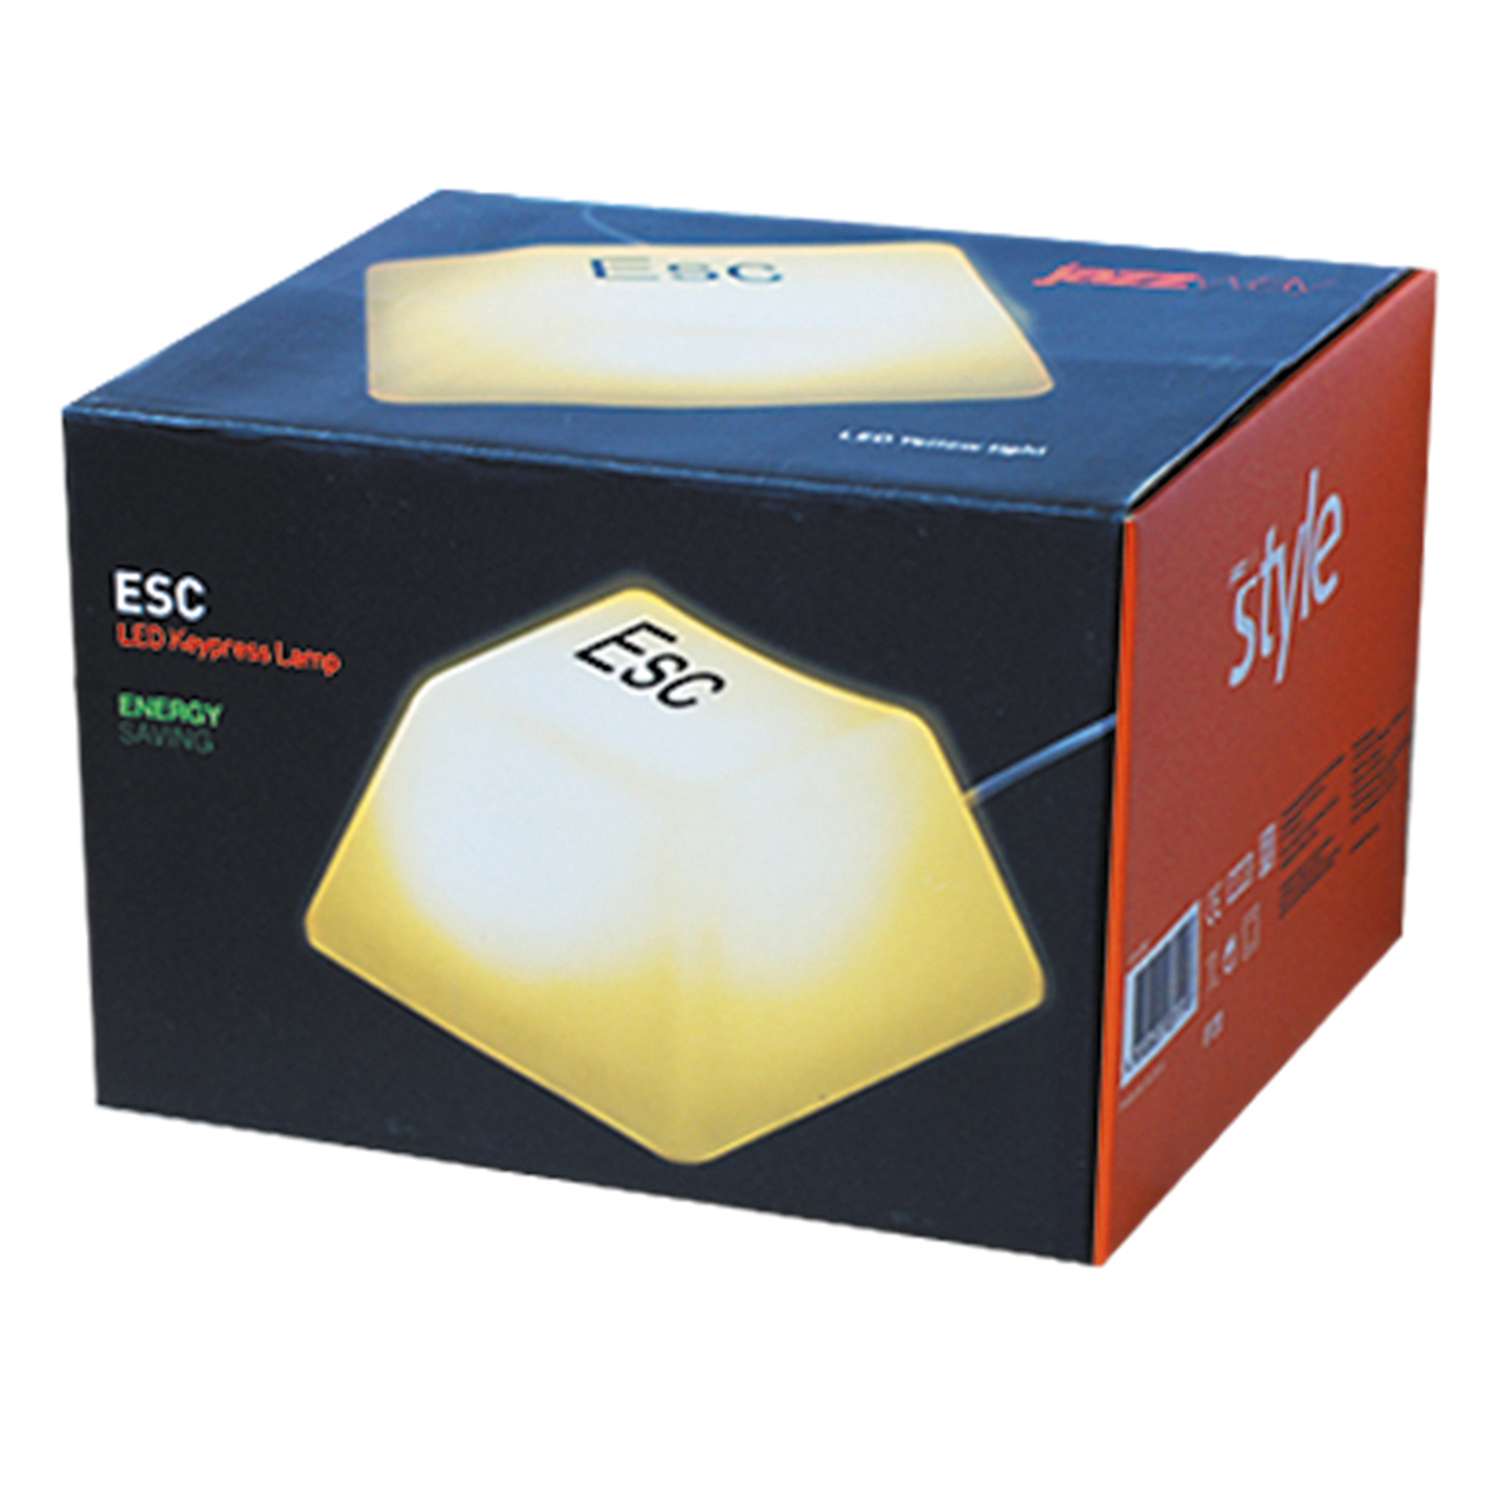 Светильник-ночник Jazzway светодиодный Клавиша Esc JS1-ESC желтый - фото 3